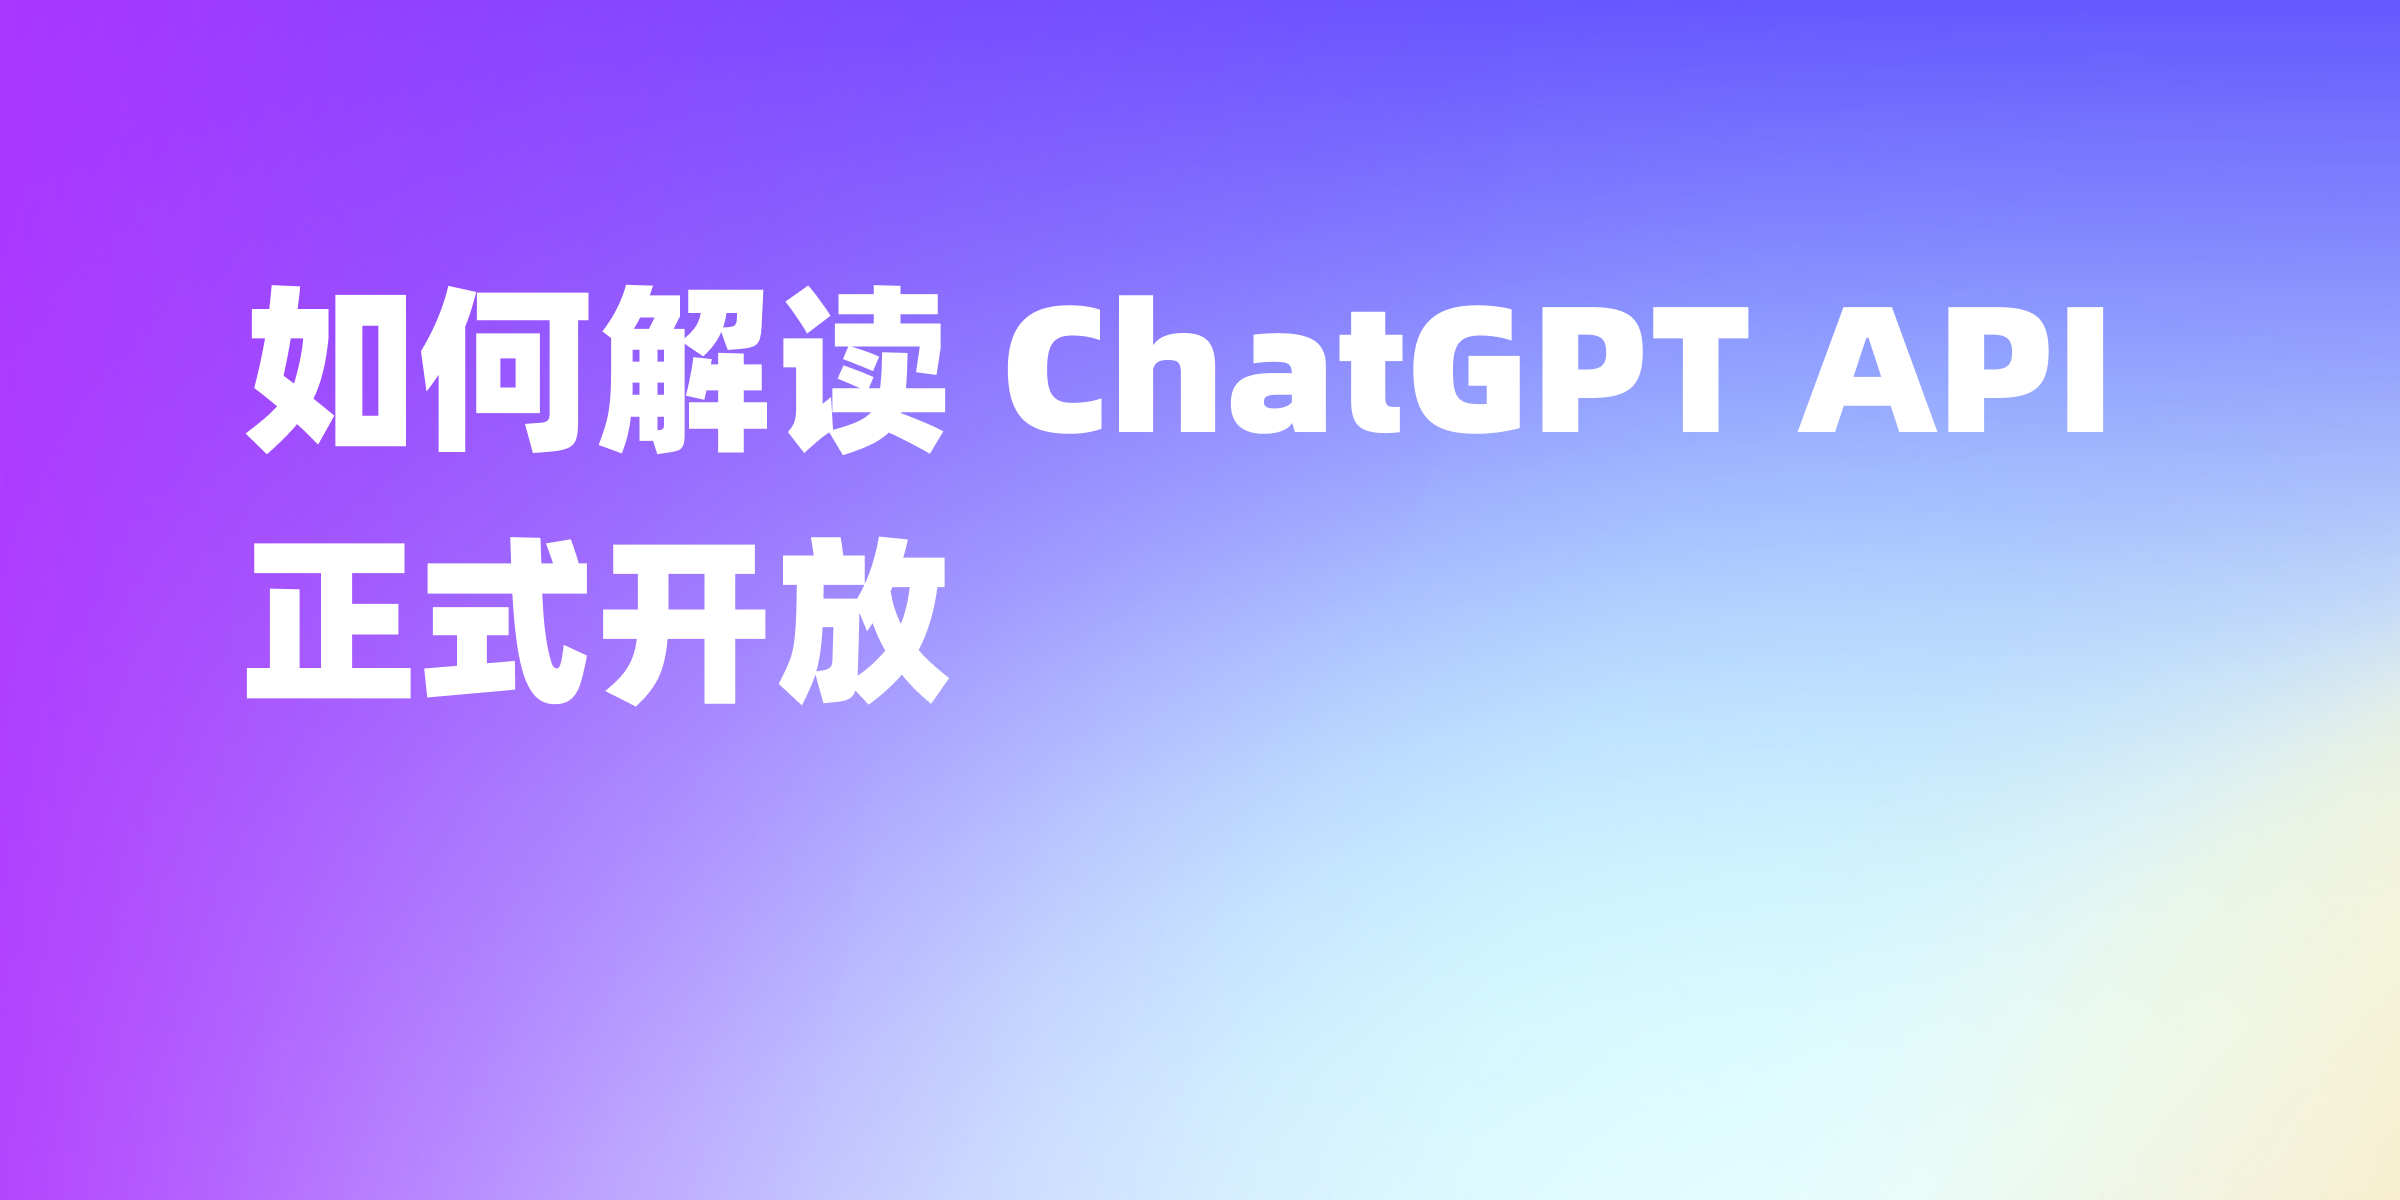 里程碑——ChatGPT API 正式开放